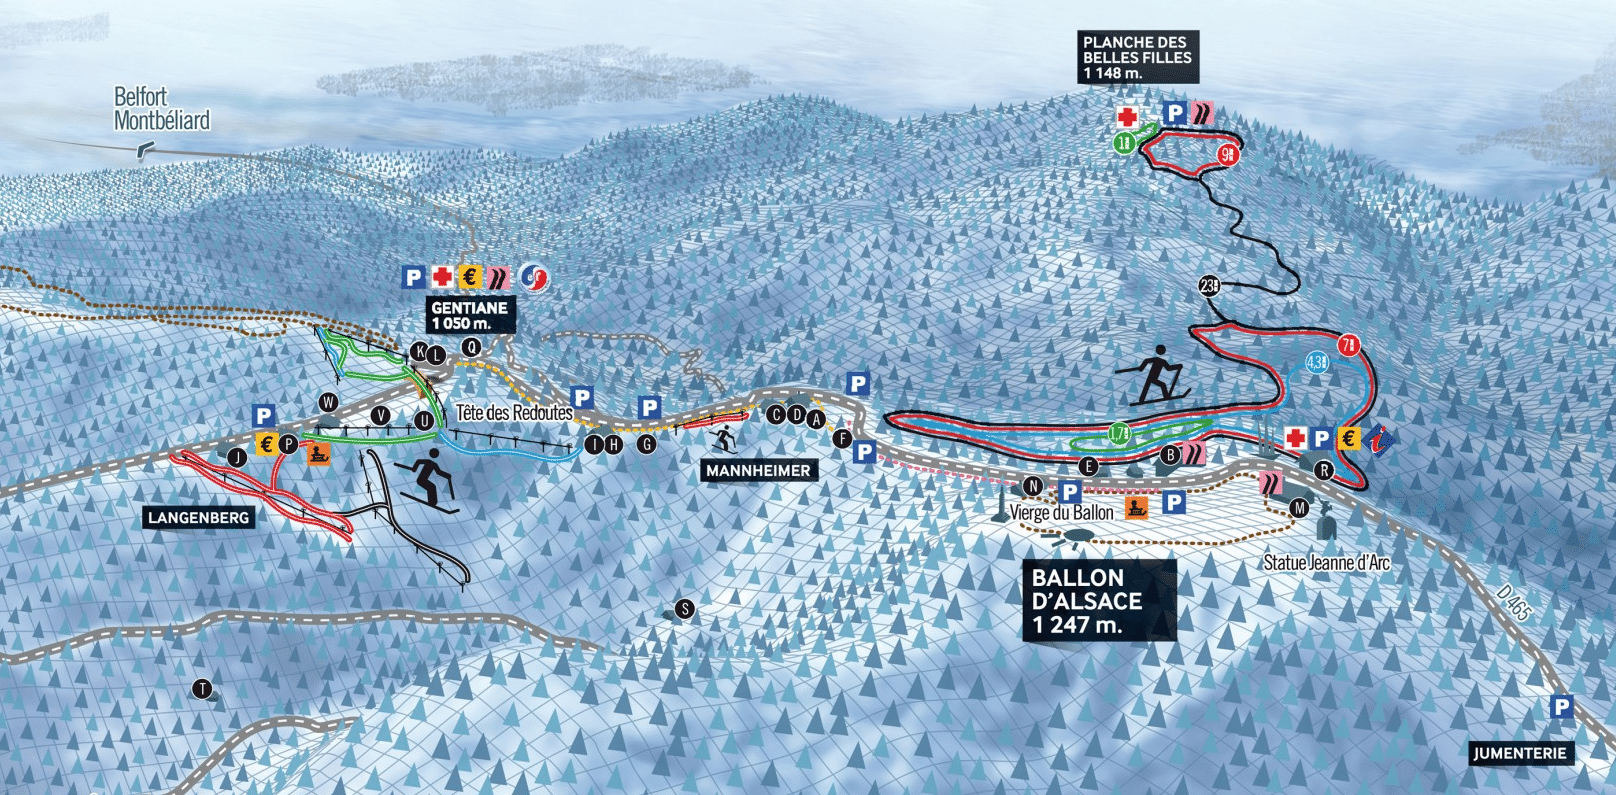 Ballon d'Alsace - Plan des piste de ski de fond